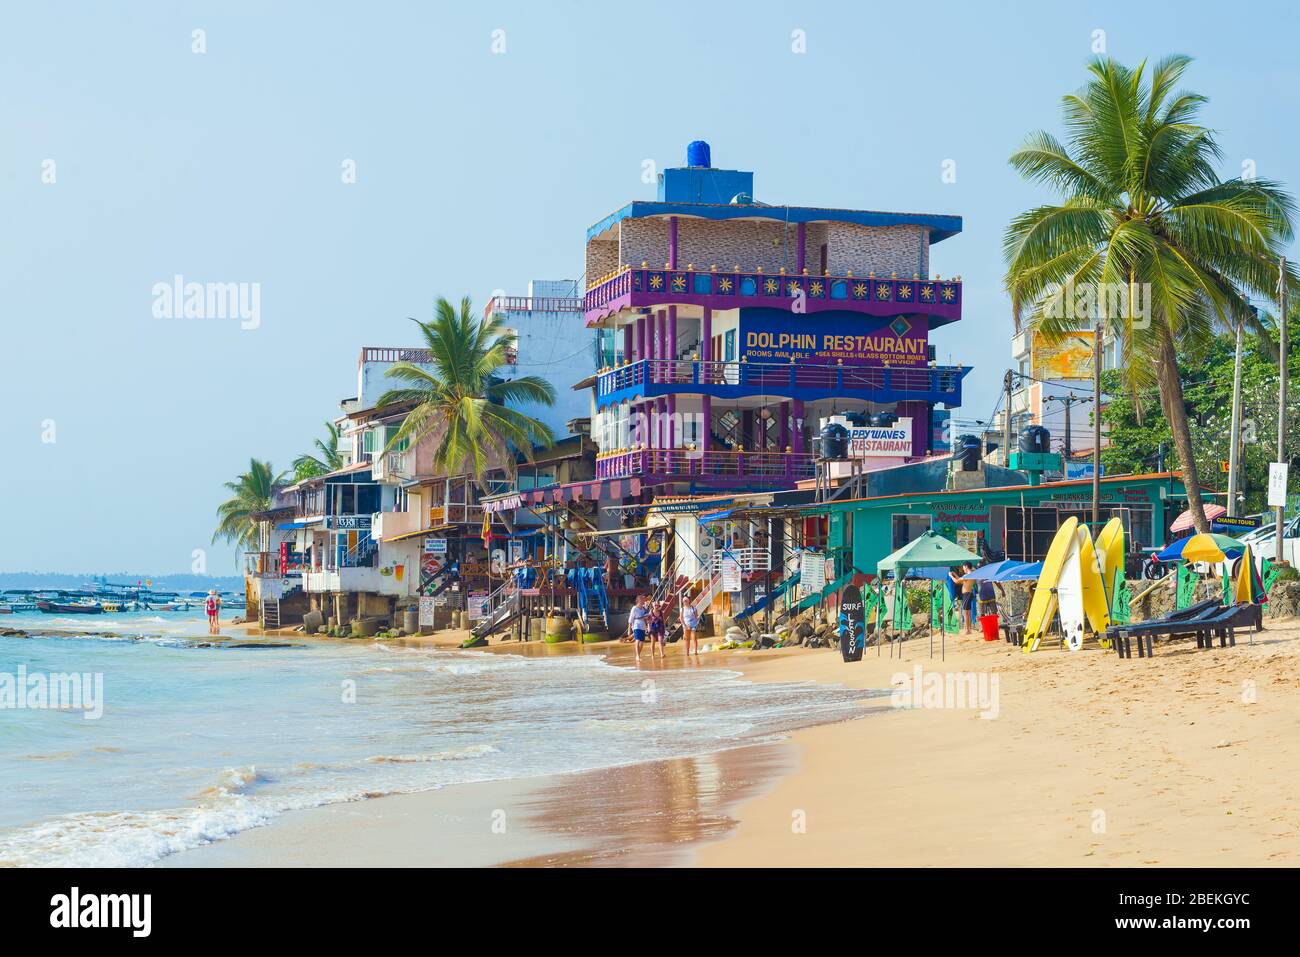 HIKKADUWA, SRI LANKA - FEBRUARY 19, 2020: View of the coastal restaurant 'Dolphin' on a sunny day Stock Photo